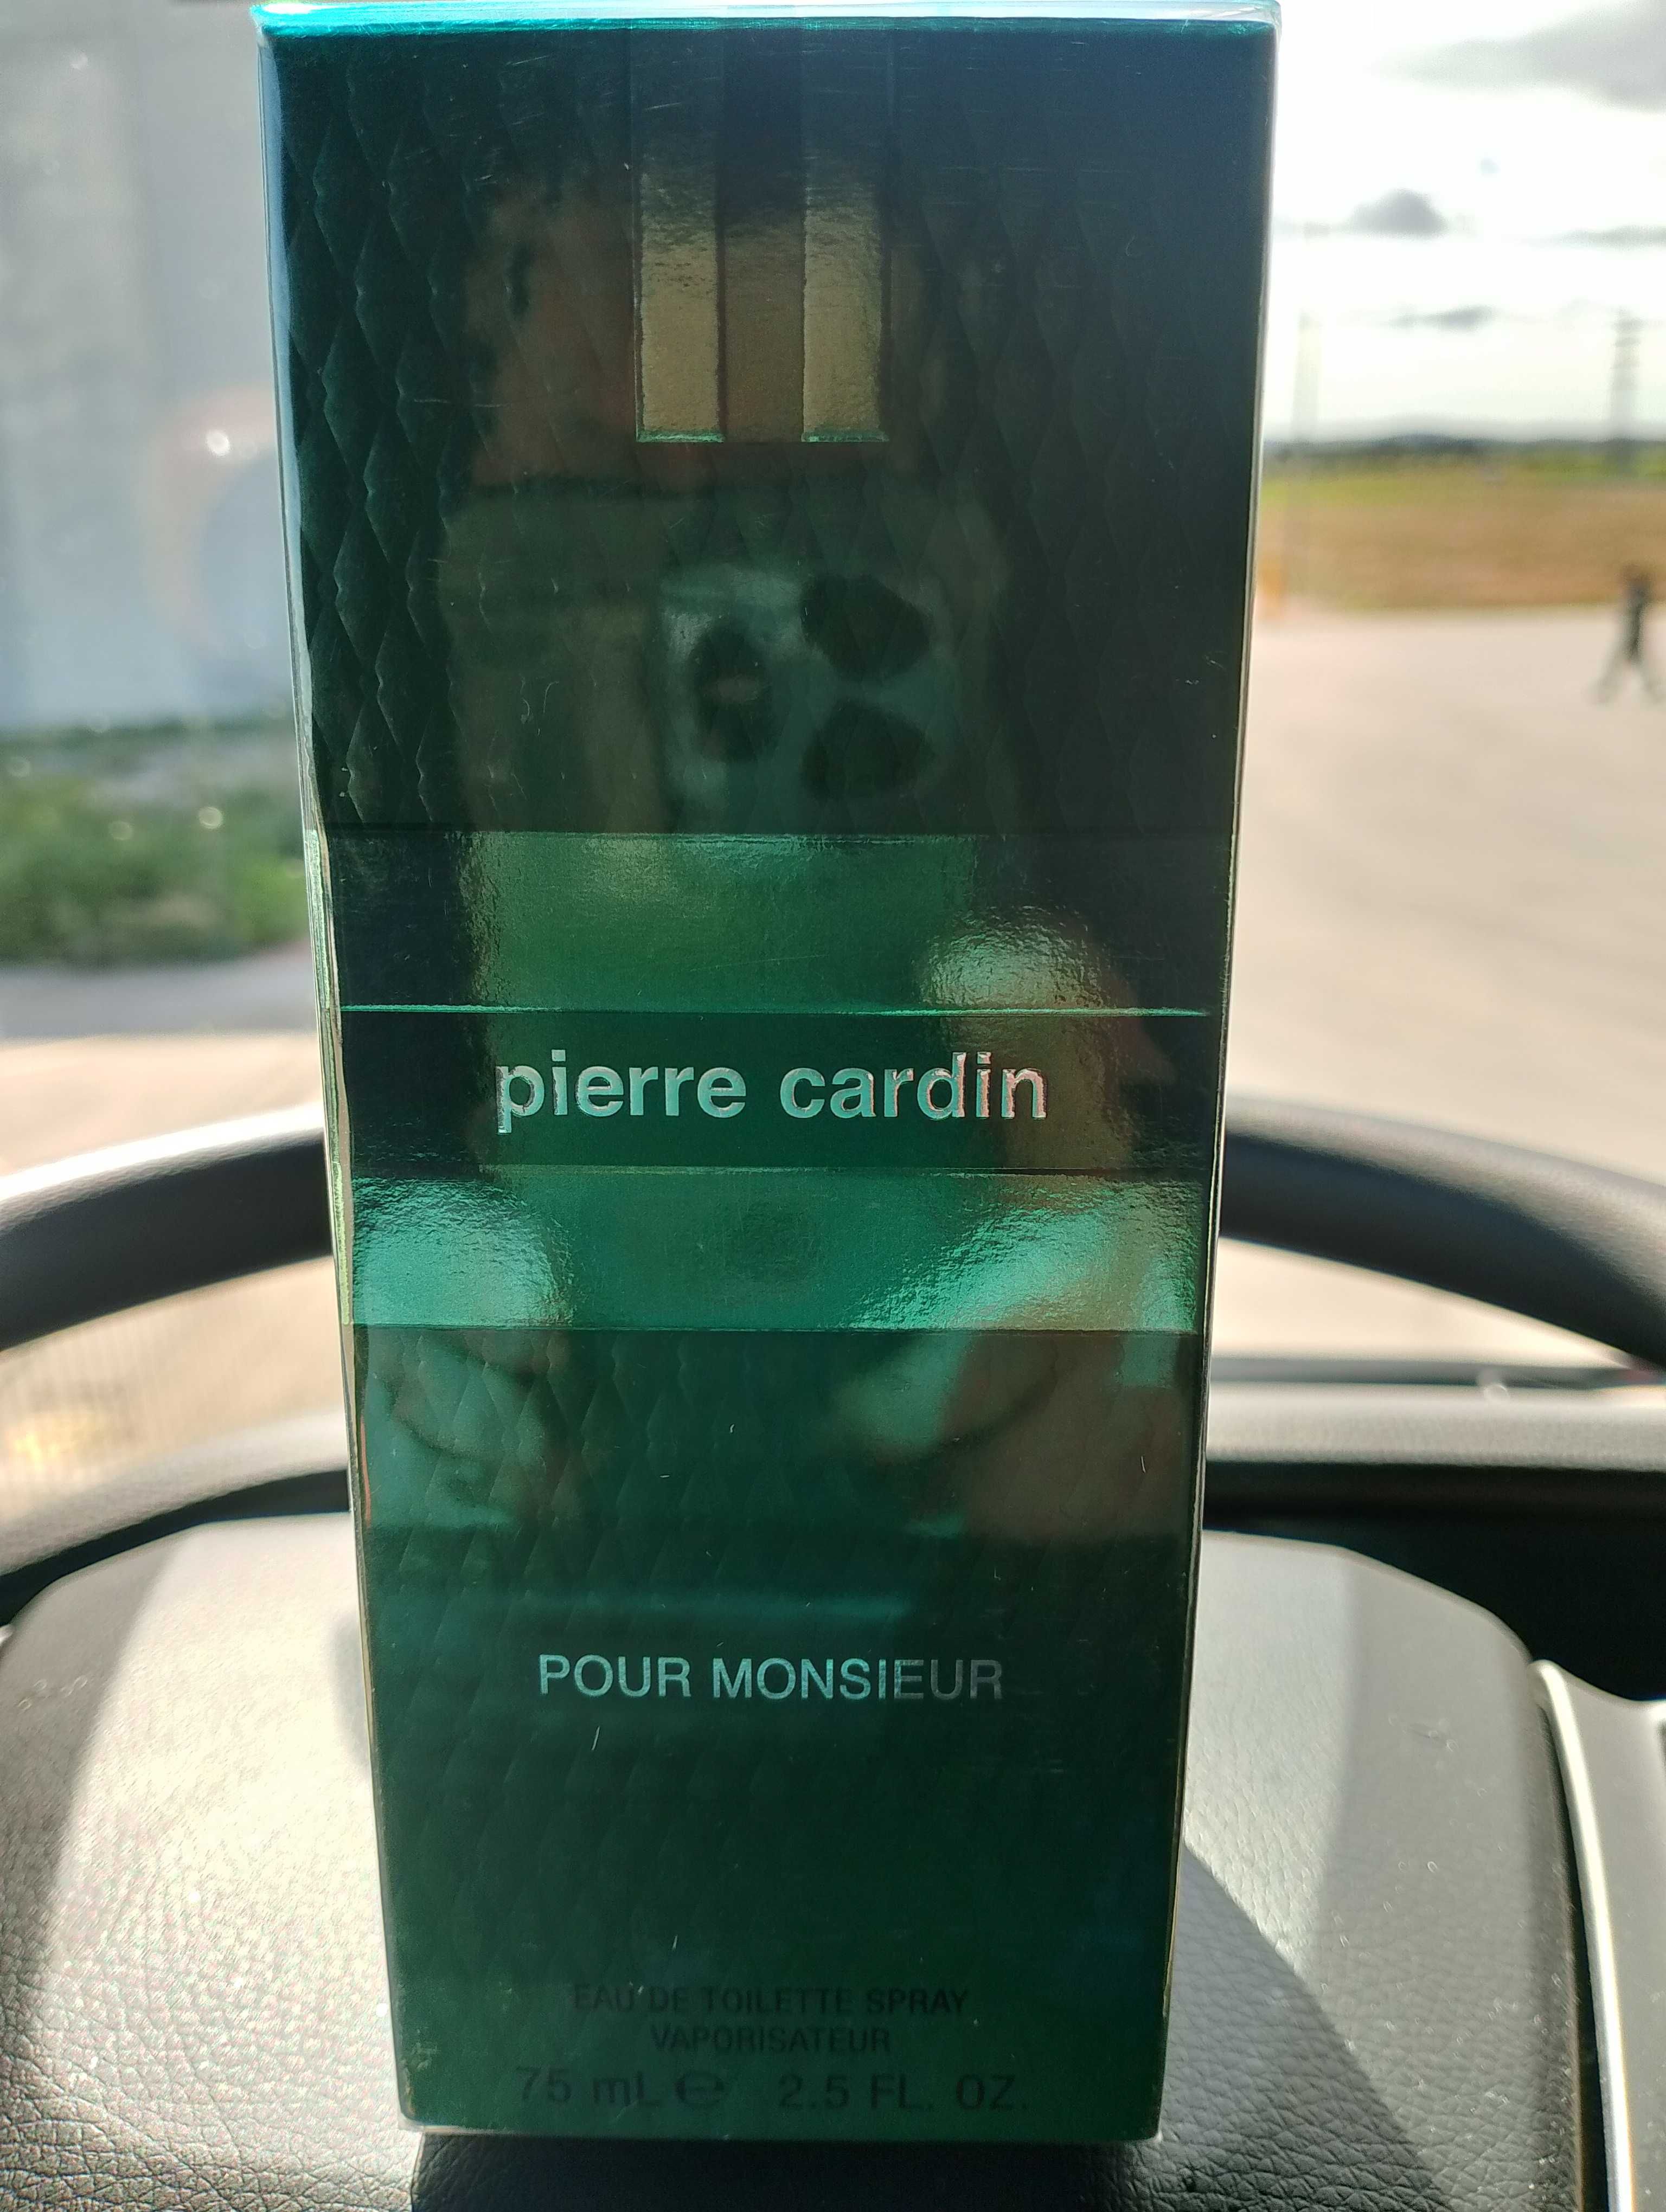 Pierre Cardin Pour Monsieur woda toaletowa z Francji